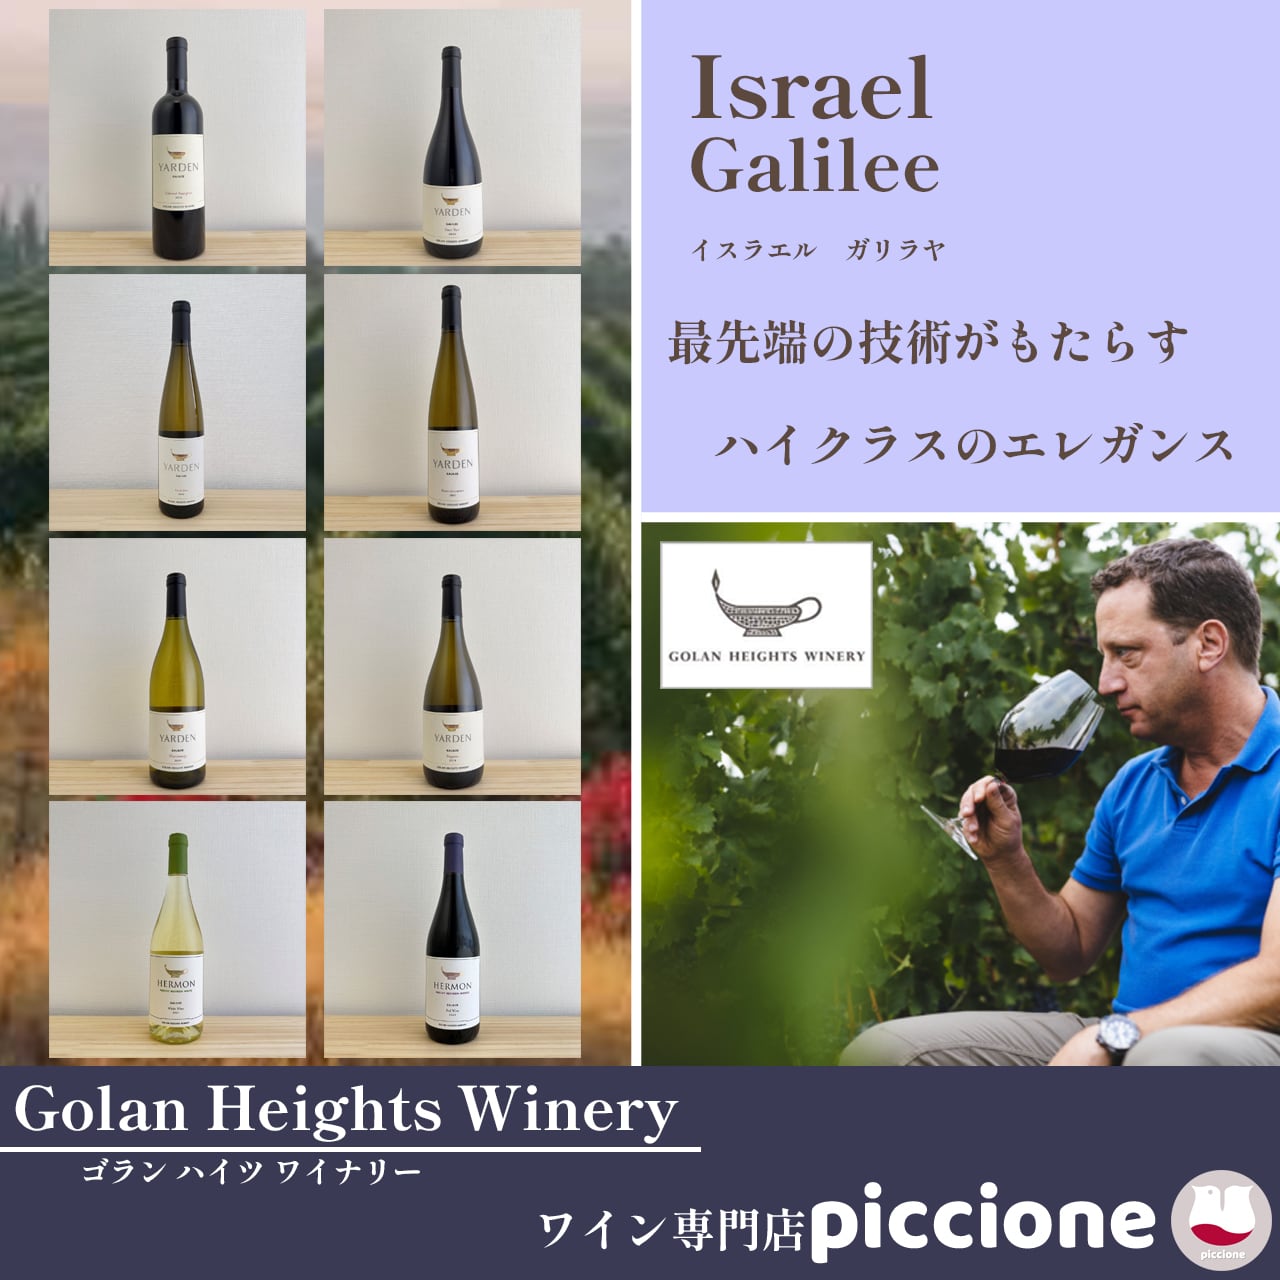 Golan Heights Winery<br>
ゴラン ハイツ ワイナリー